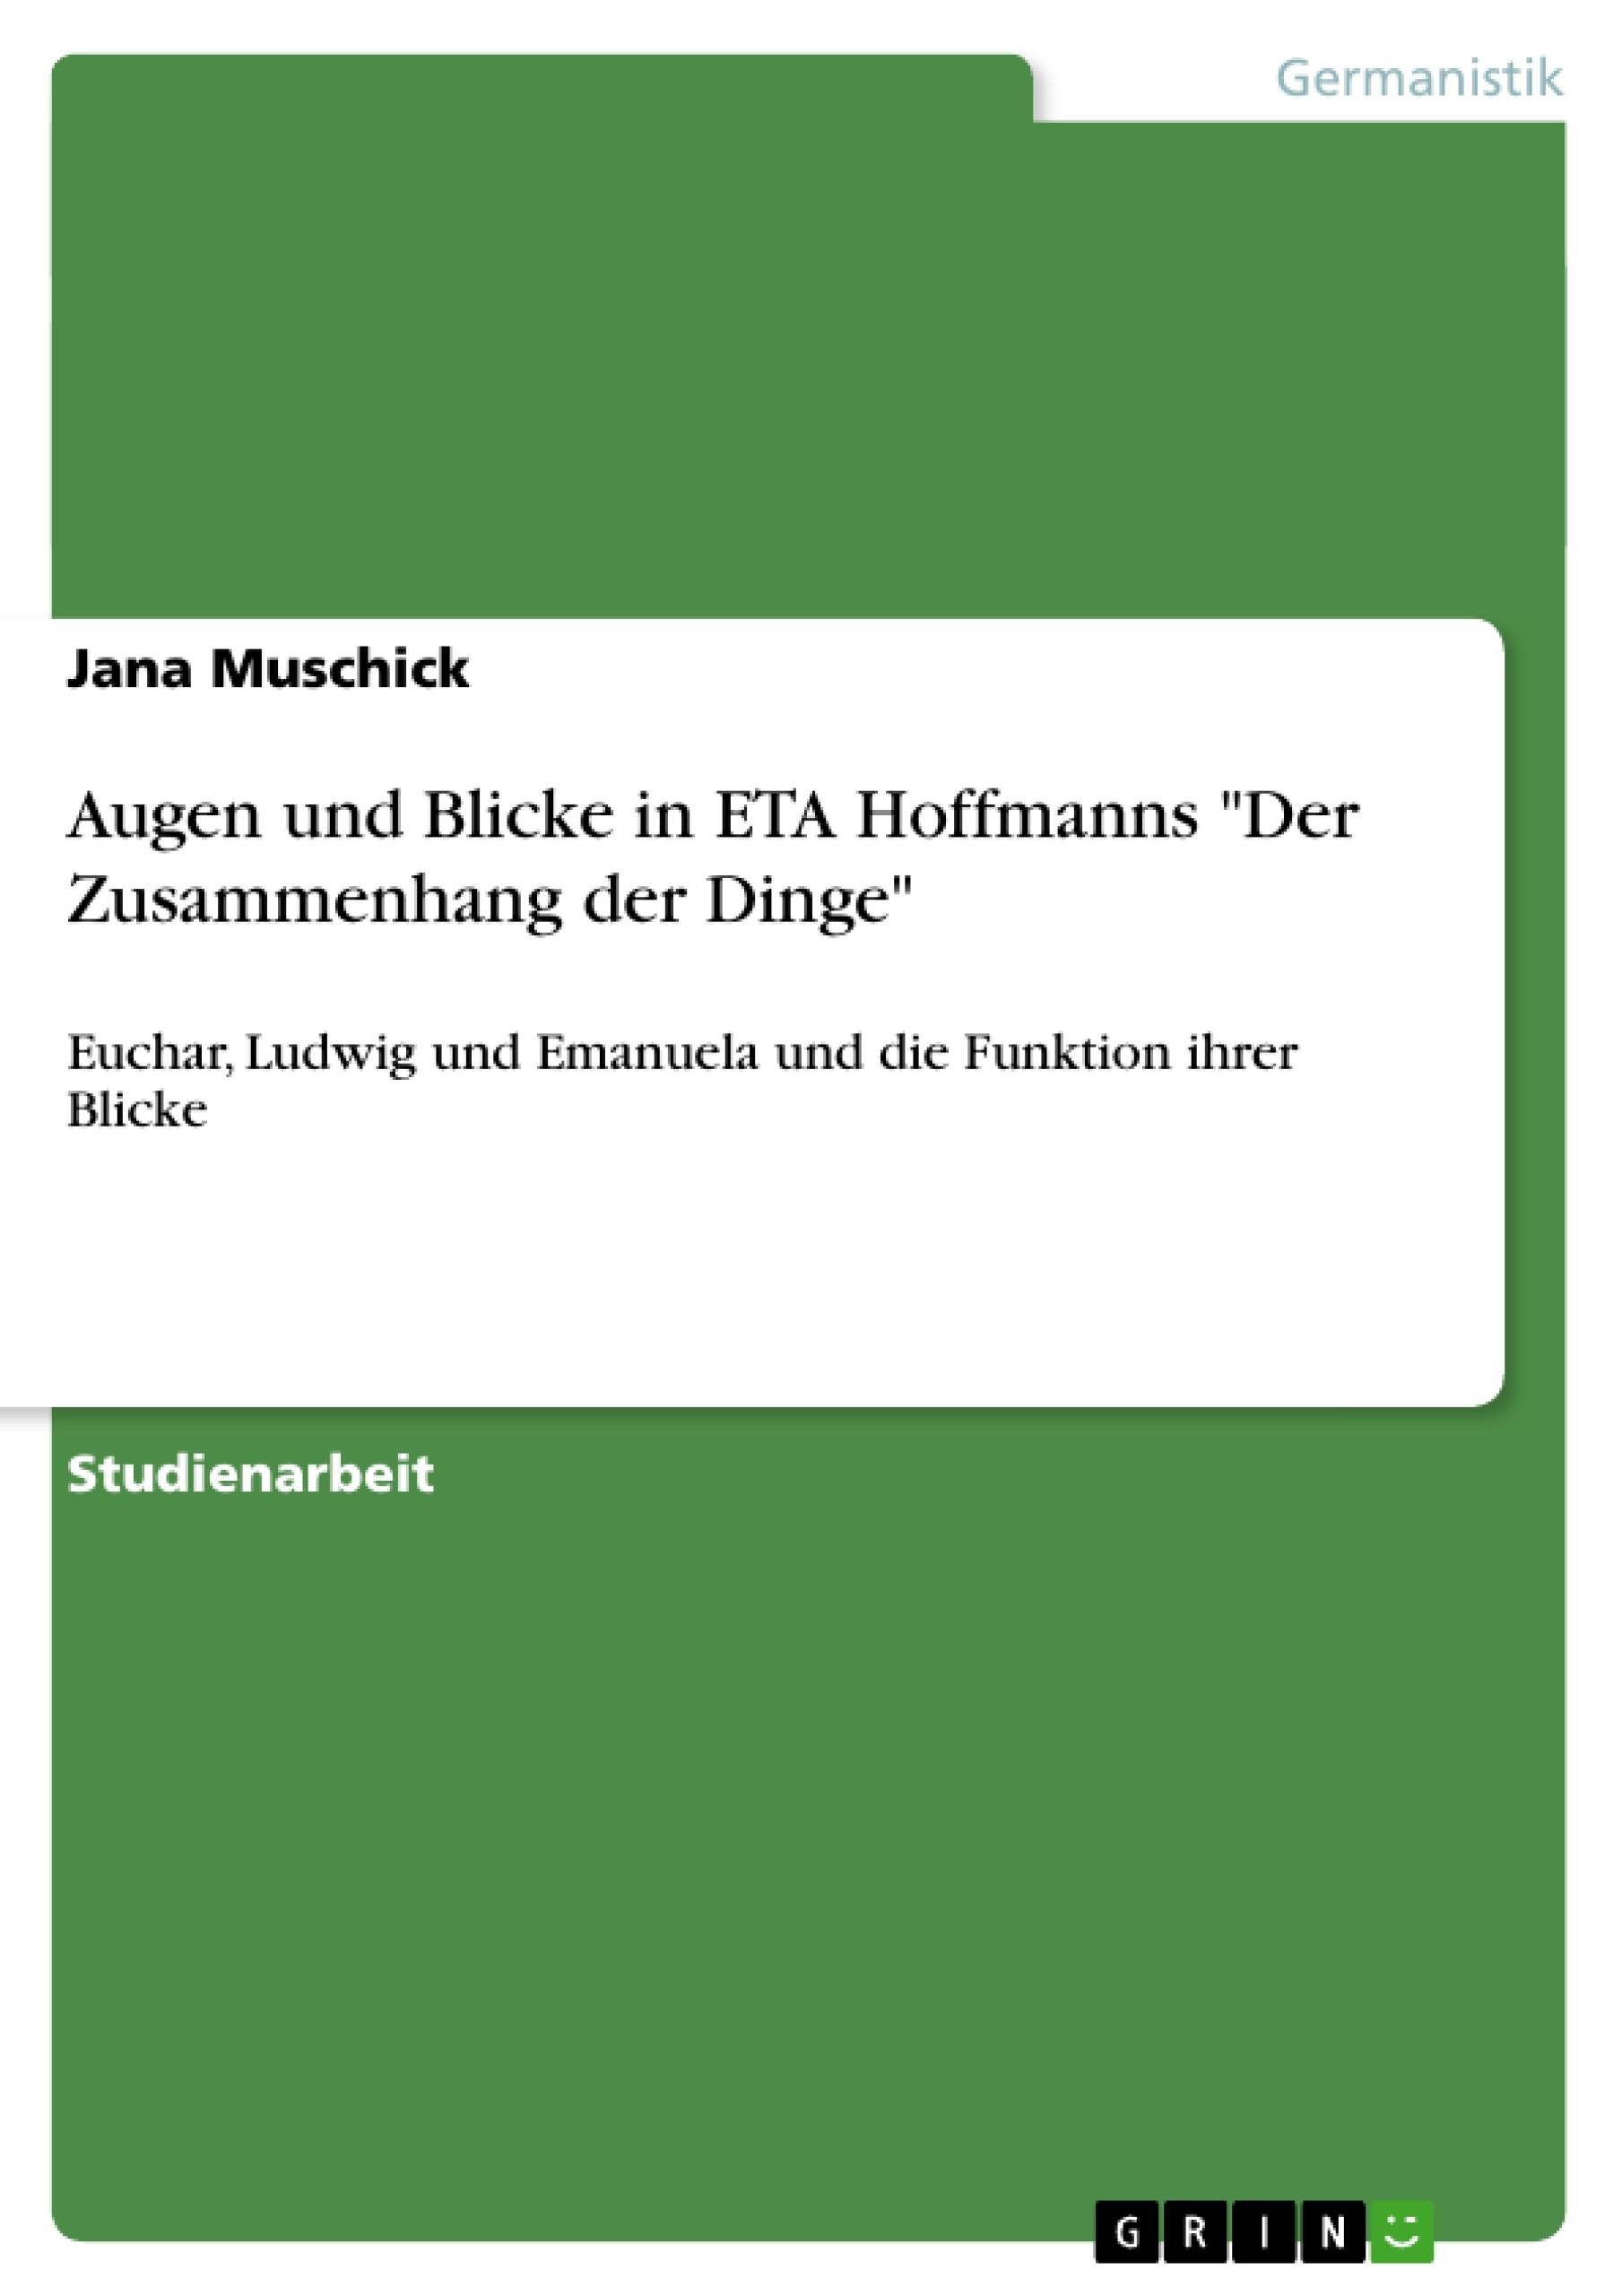 Titre: Augen und Blicke in ETA Hoffmanns "Der Zusammenhang der Dinge"